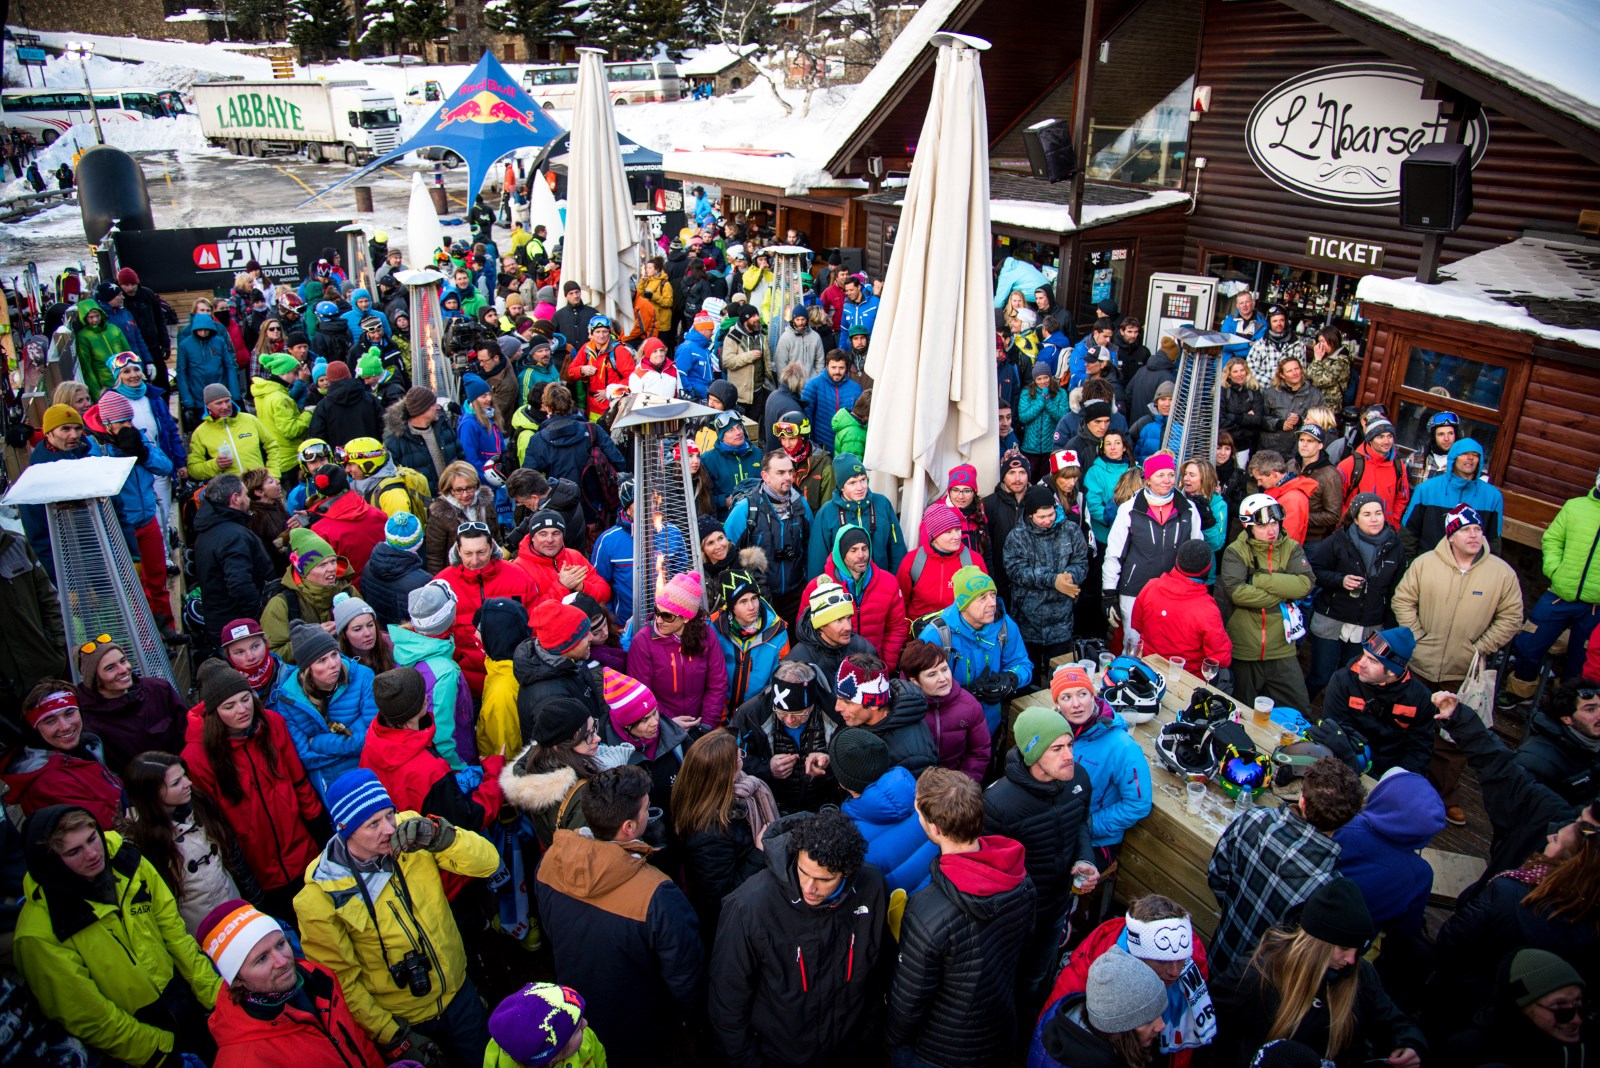 ¡Adiós a L’Abarset! el local de moda del après-ski andorrano tiene fecha de caducidad